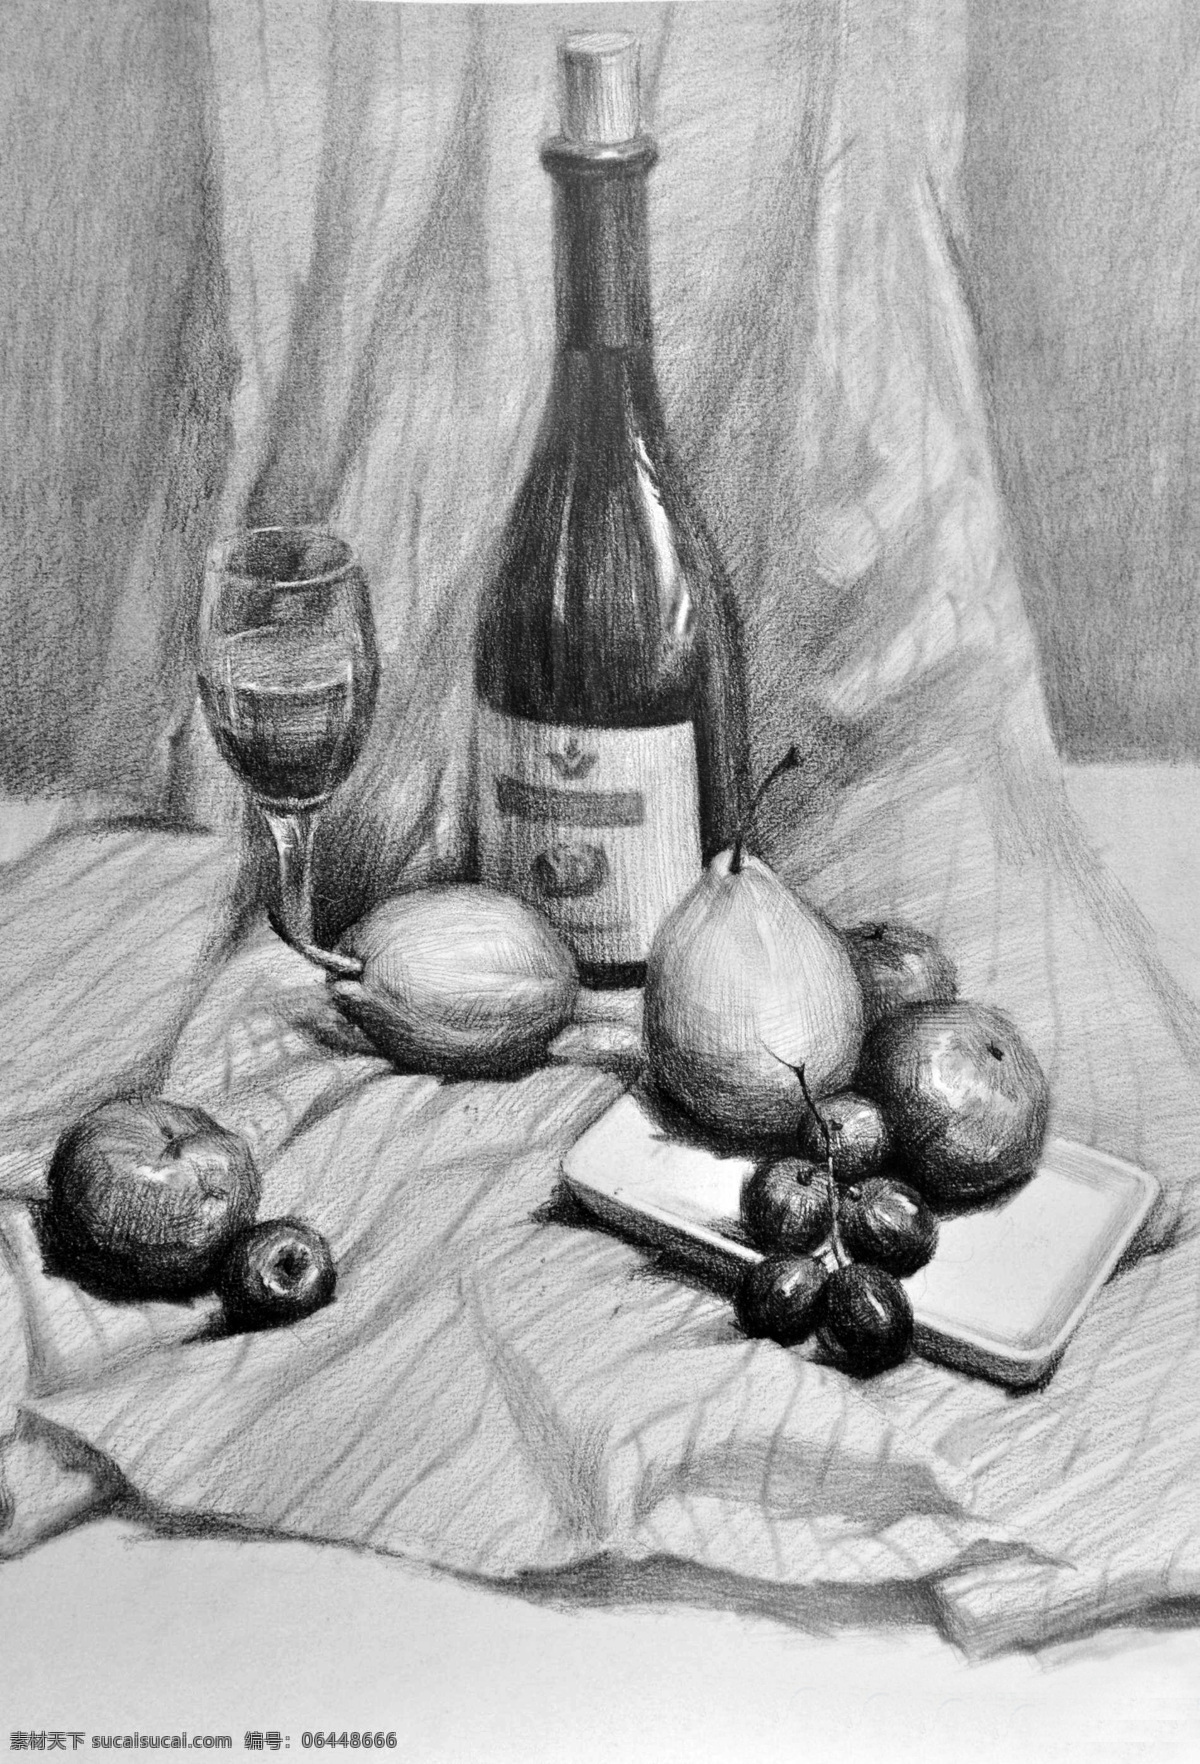 素描 素描静物 静物素描 素描作品 瓶子 高脚杯 水果 艺术绘画 文化艺术 绘画书法